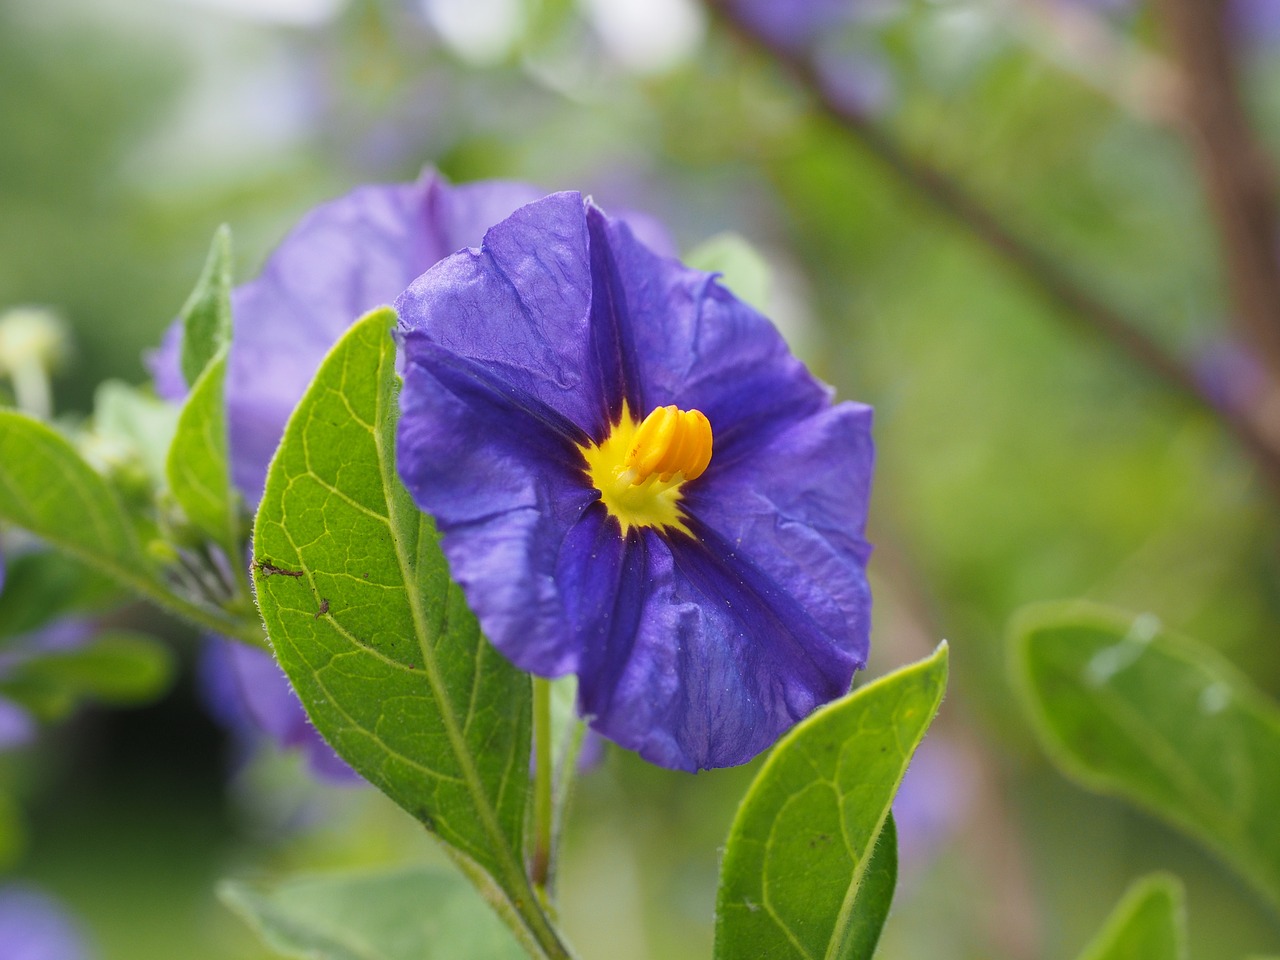 gentian shrub flowers purple free photo